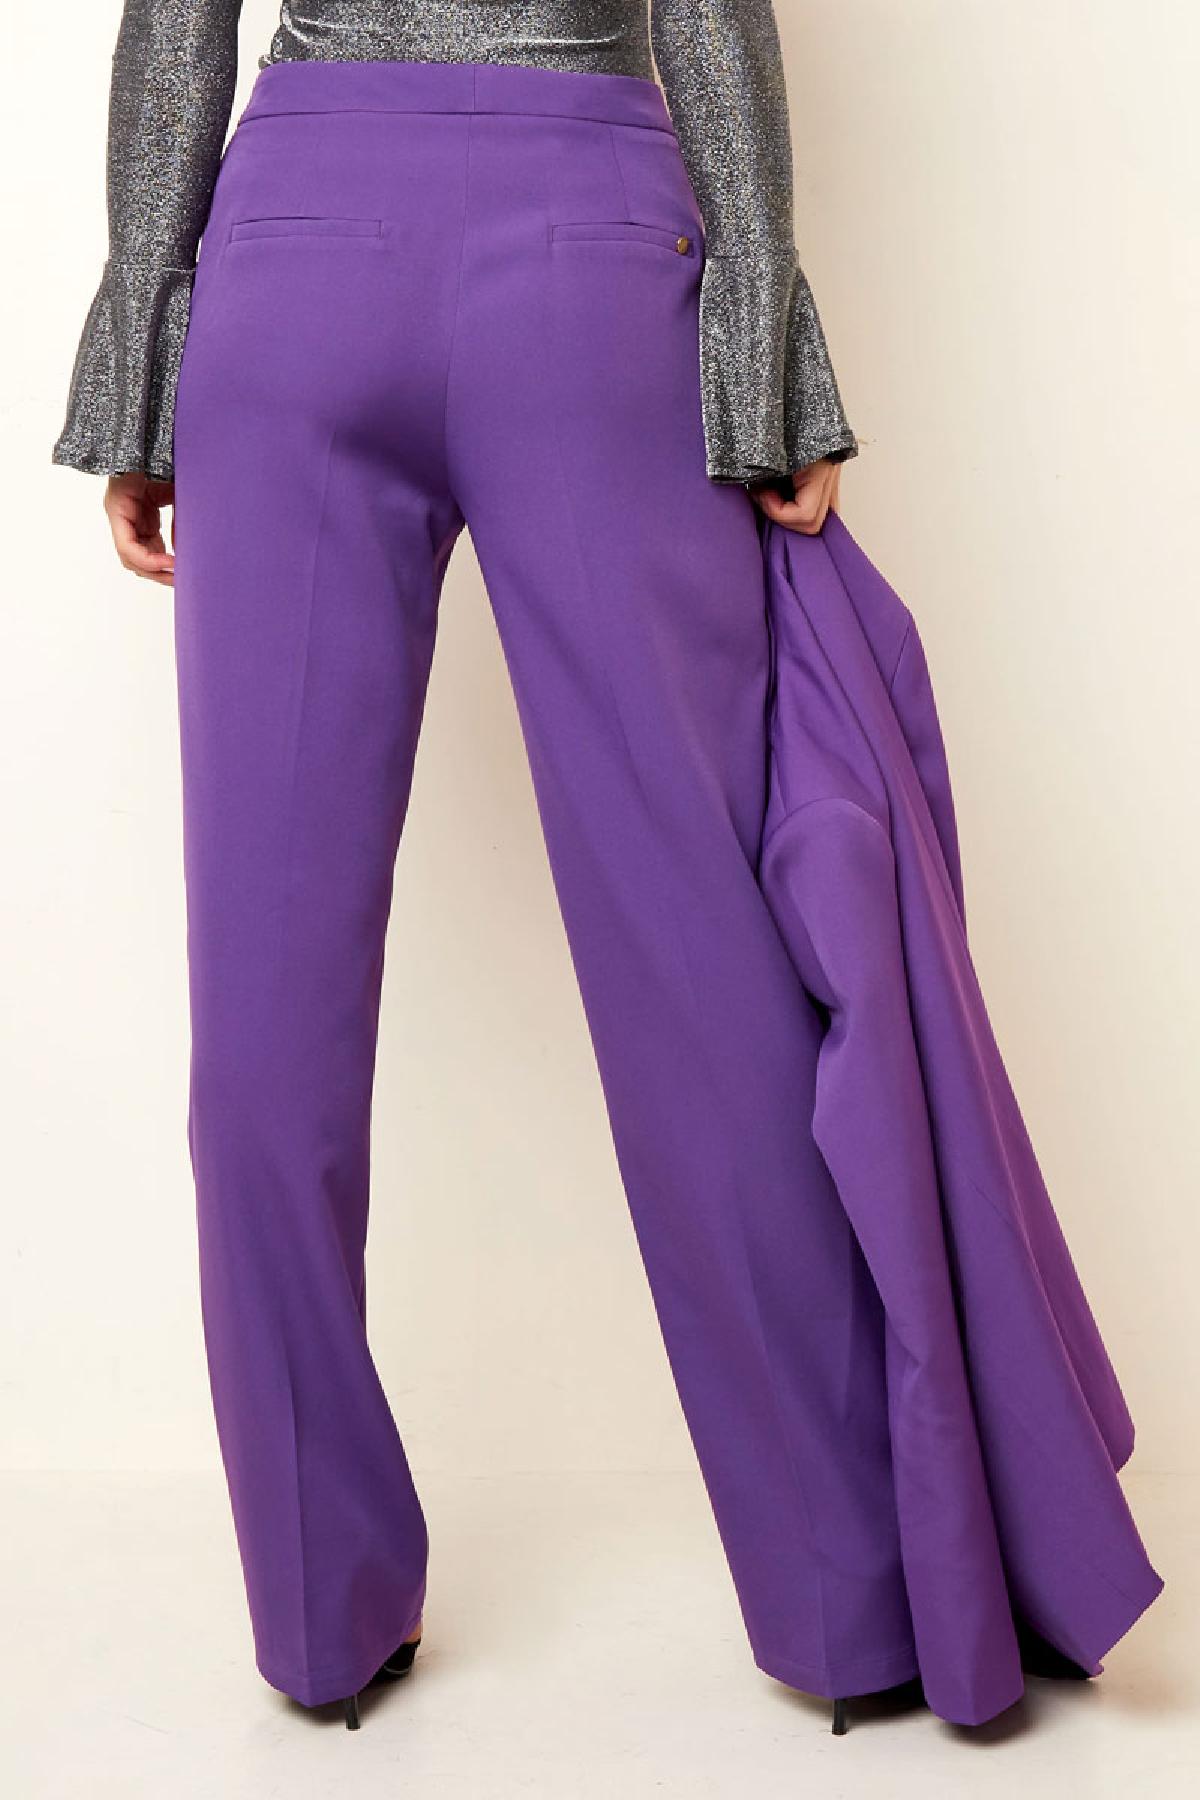 Pantalones básicos - Imprescindibles para las vacaciones Beige S Imagen7